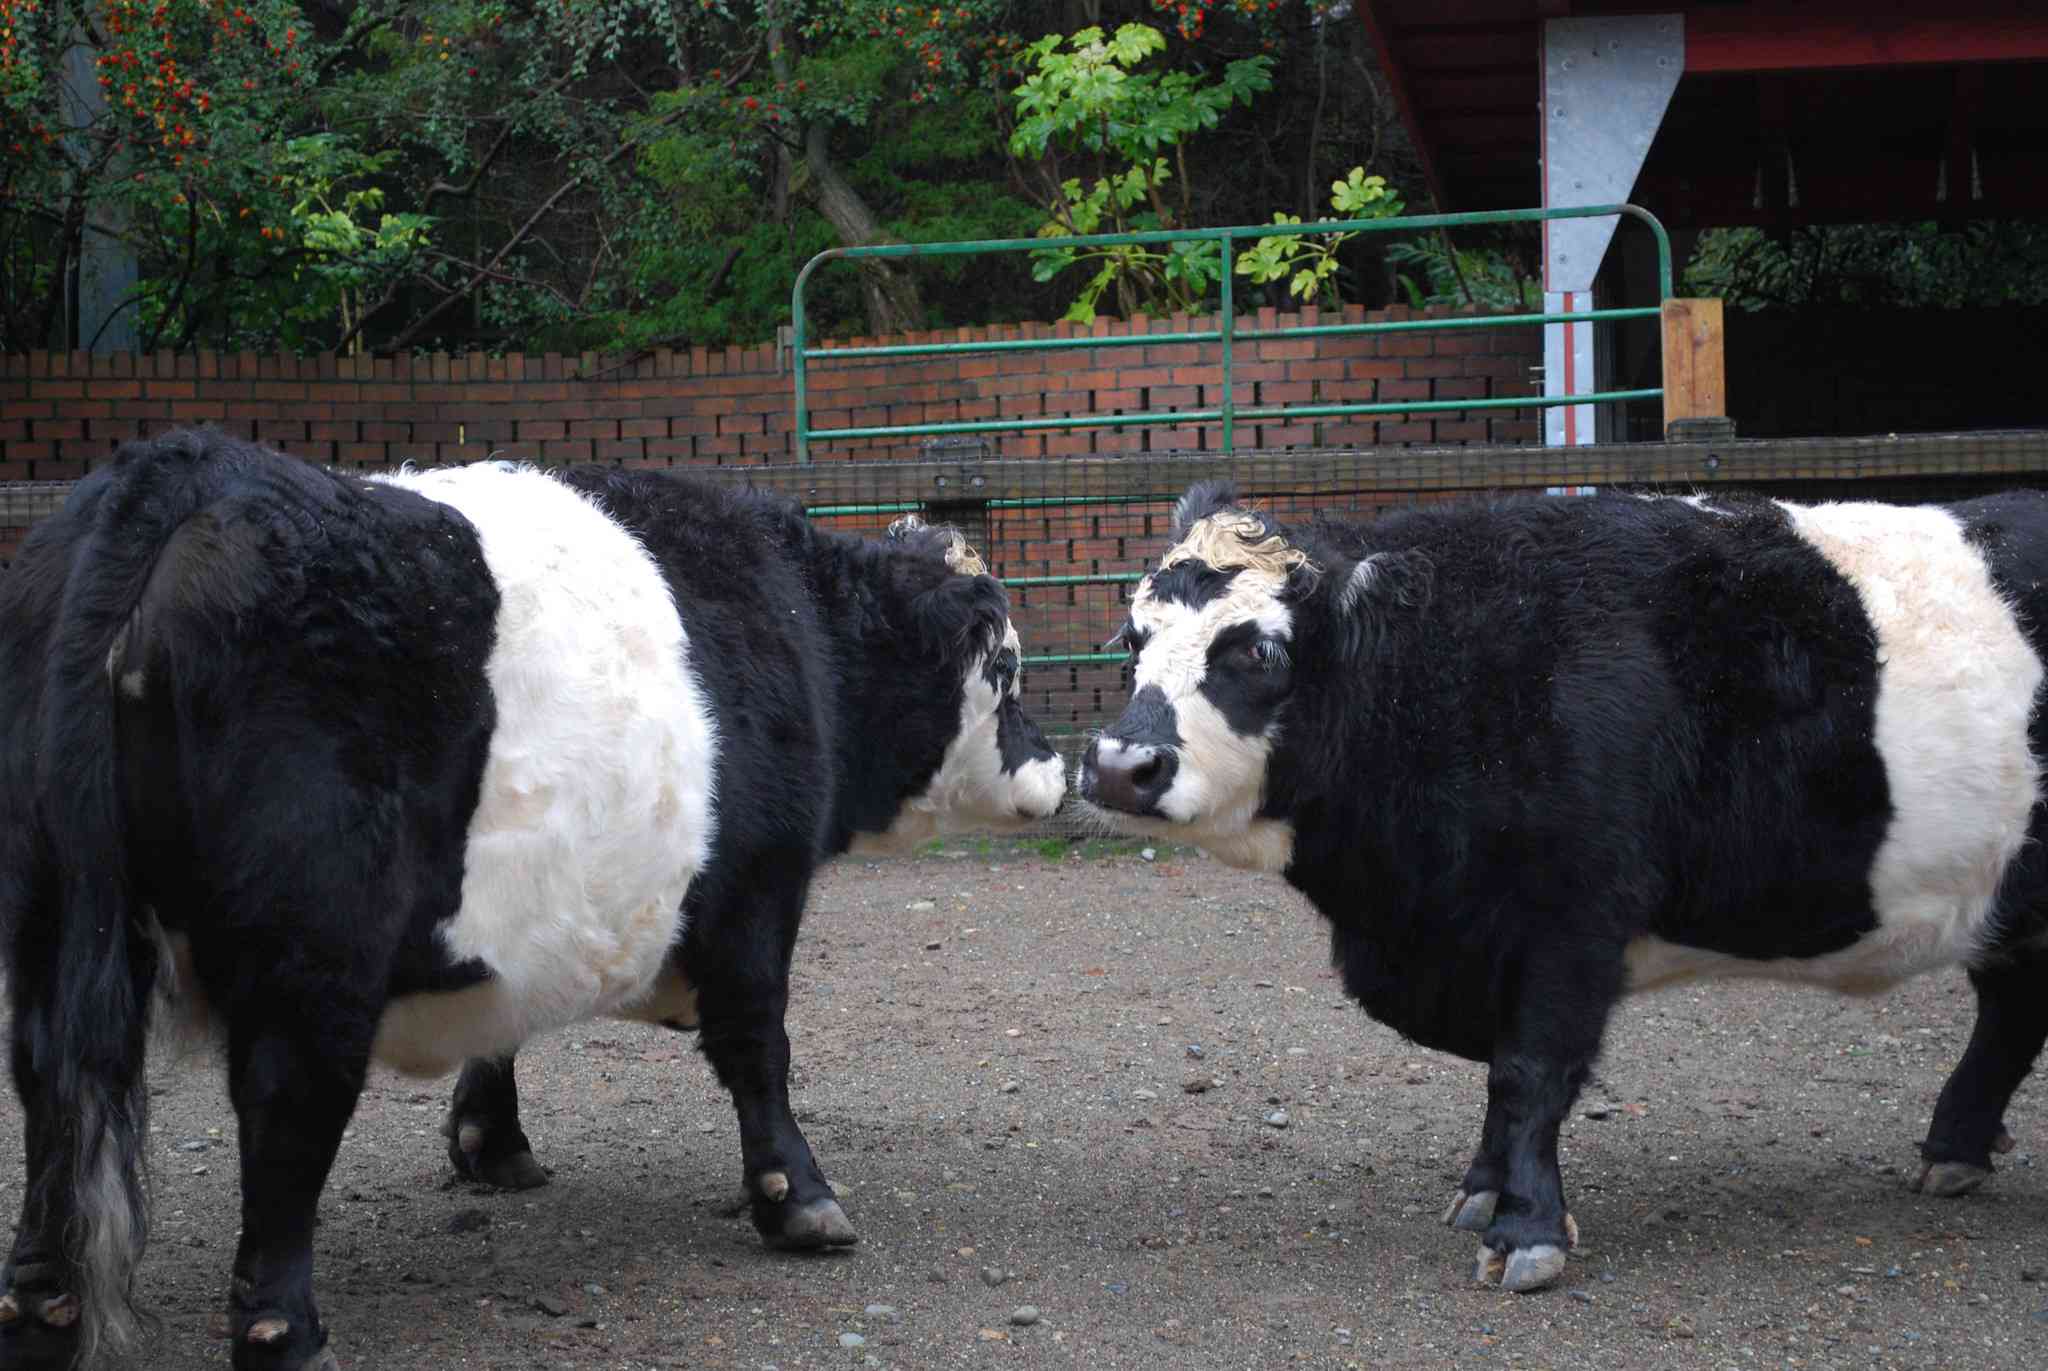 两头黑白相间的熊猫牛在围栏里互相嗅着对方＂width=